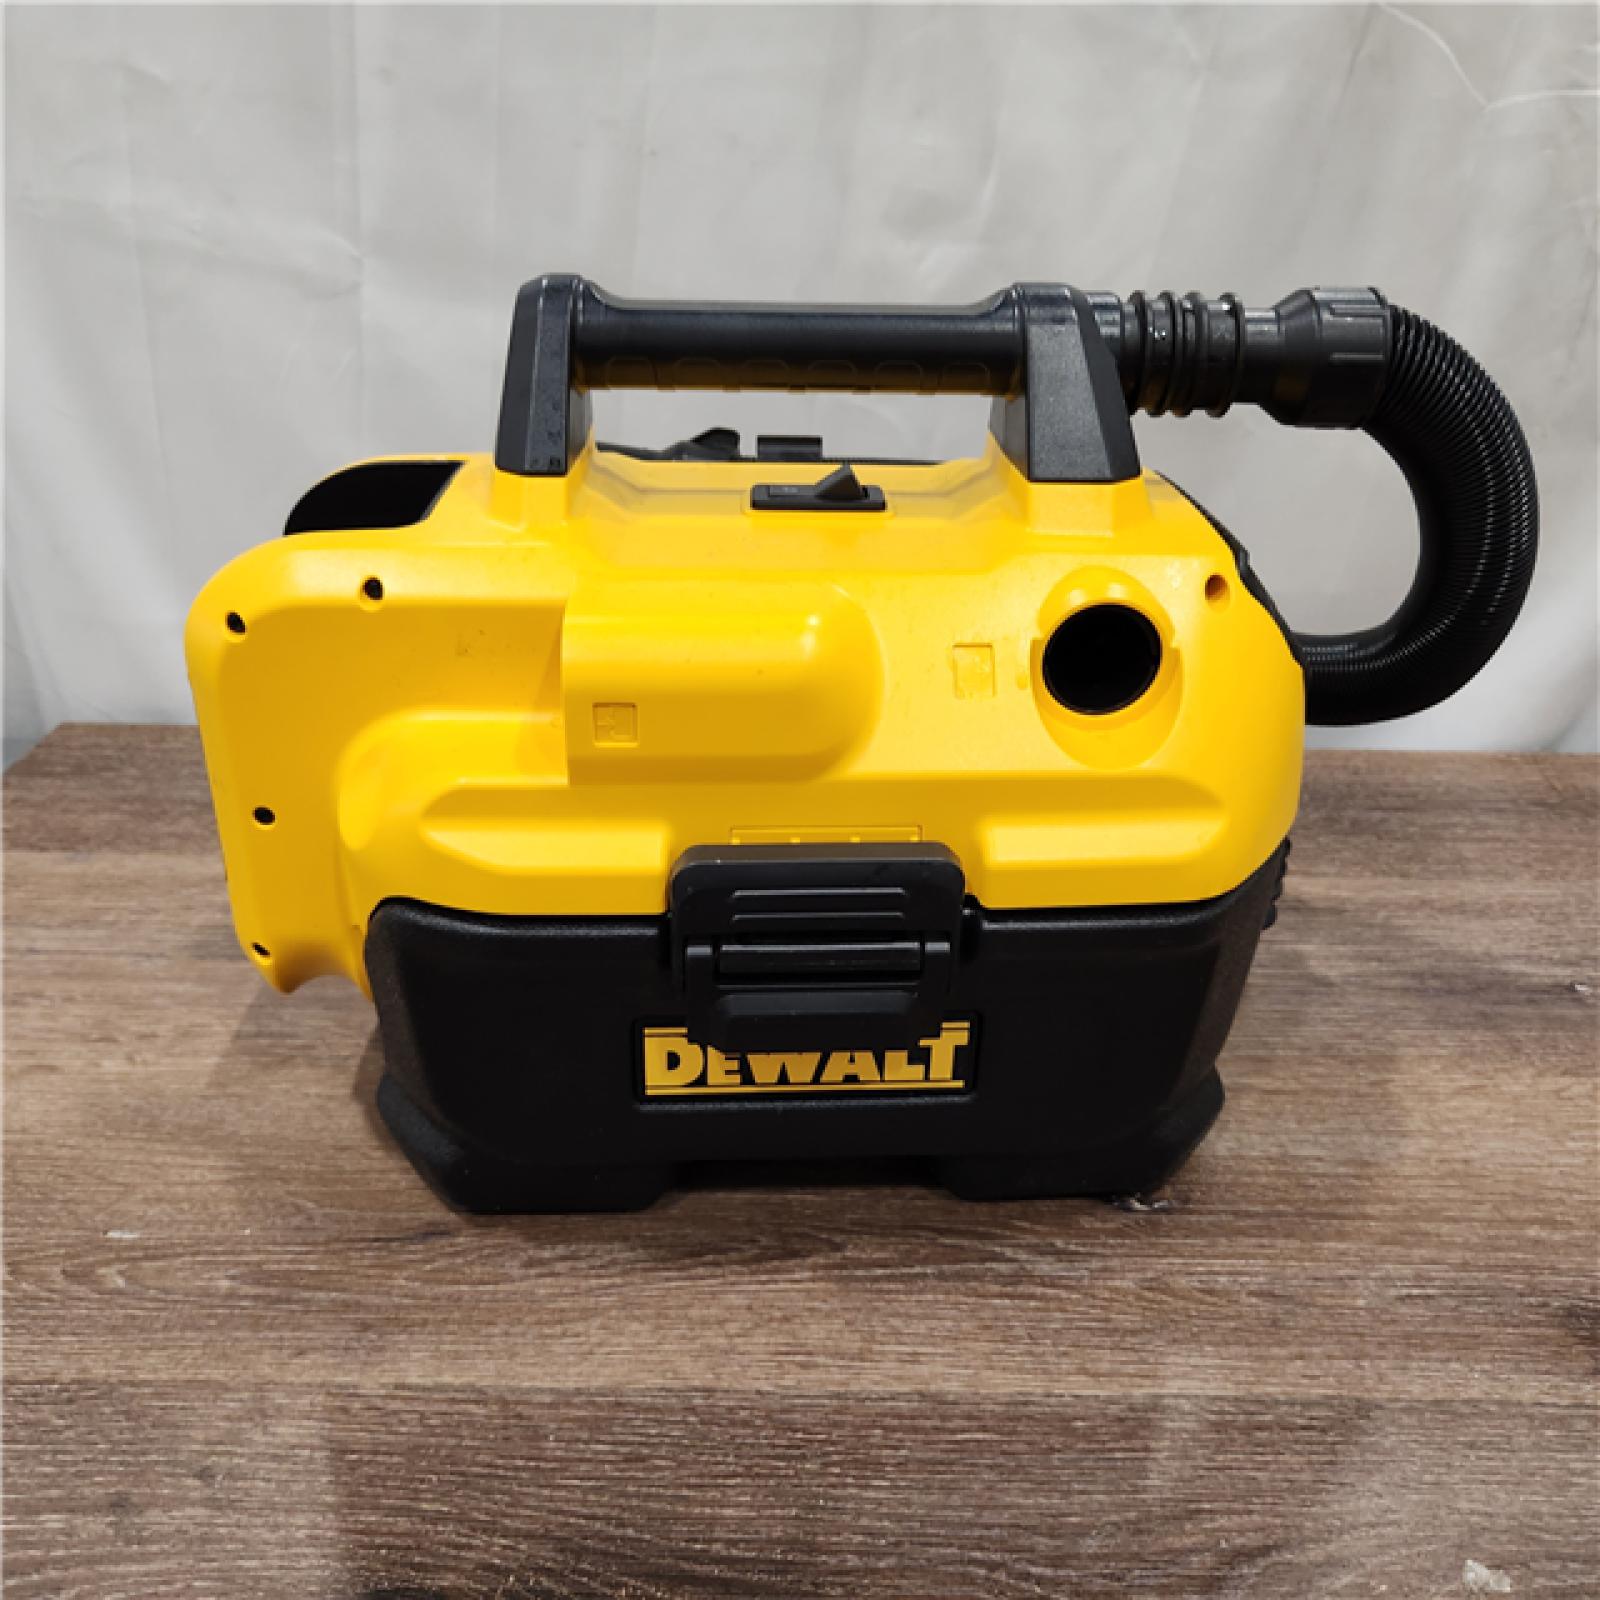 AS-IS DEWALT 2 Gal. Max Cordless Wet/Dry Vacuum (Tool-Only)